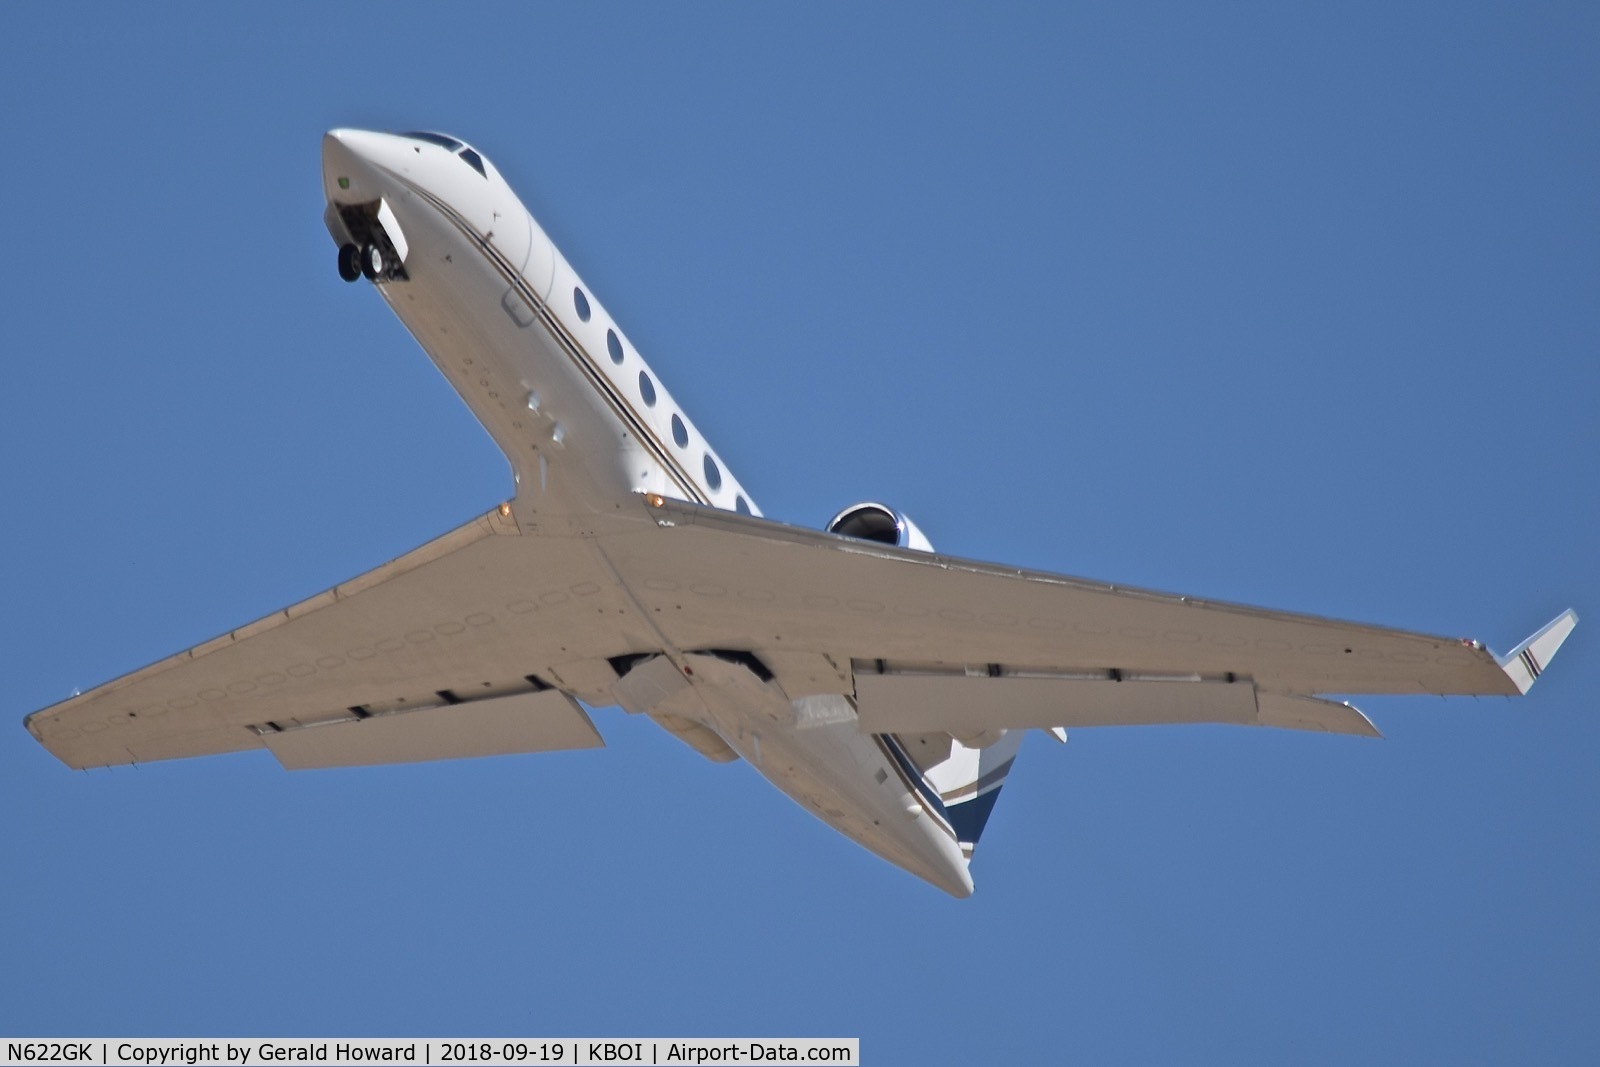 N622GK, 2009 Gulfstream Aerospace G450 (GIV-X) C/N 4164, Climb out from RWY 28L.